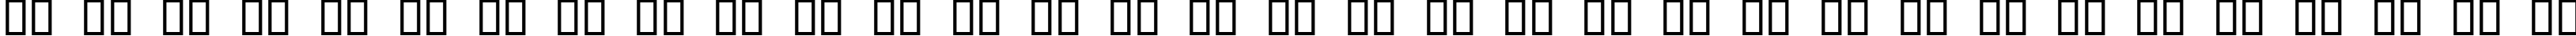 Пример написания русского алфавита шрифтом Estrangelo Edessa